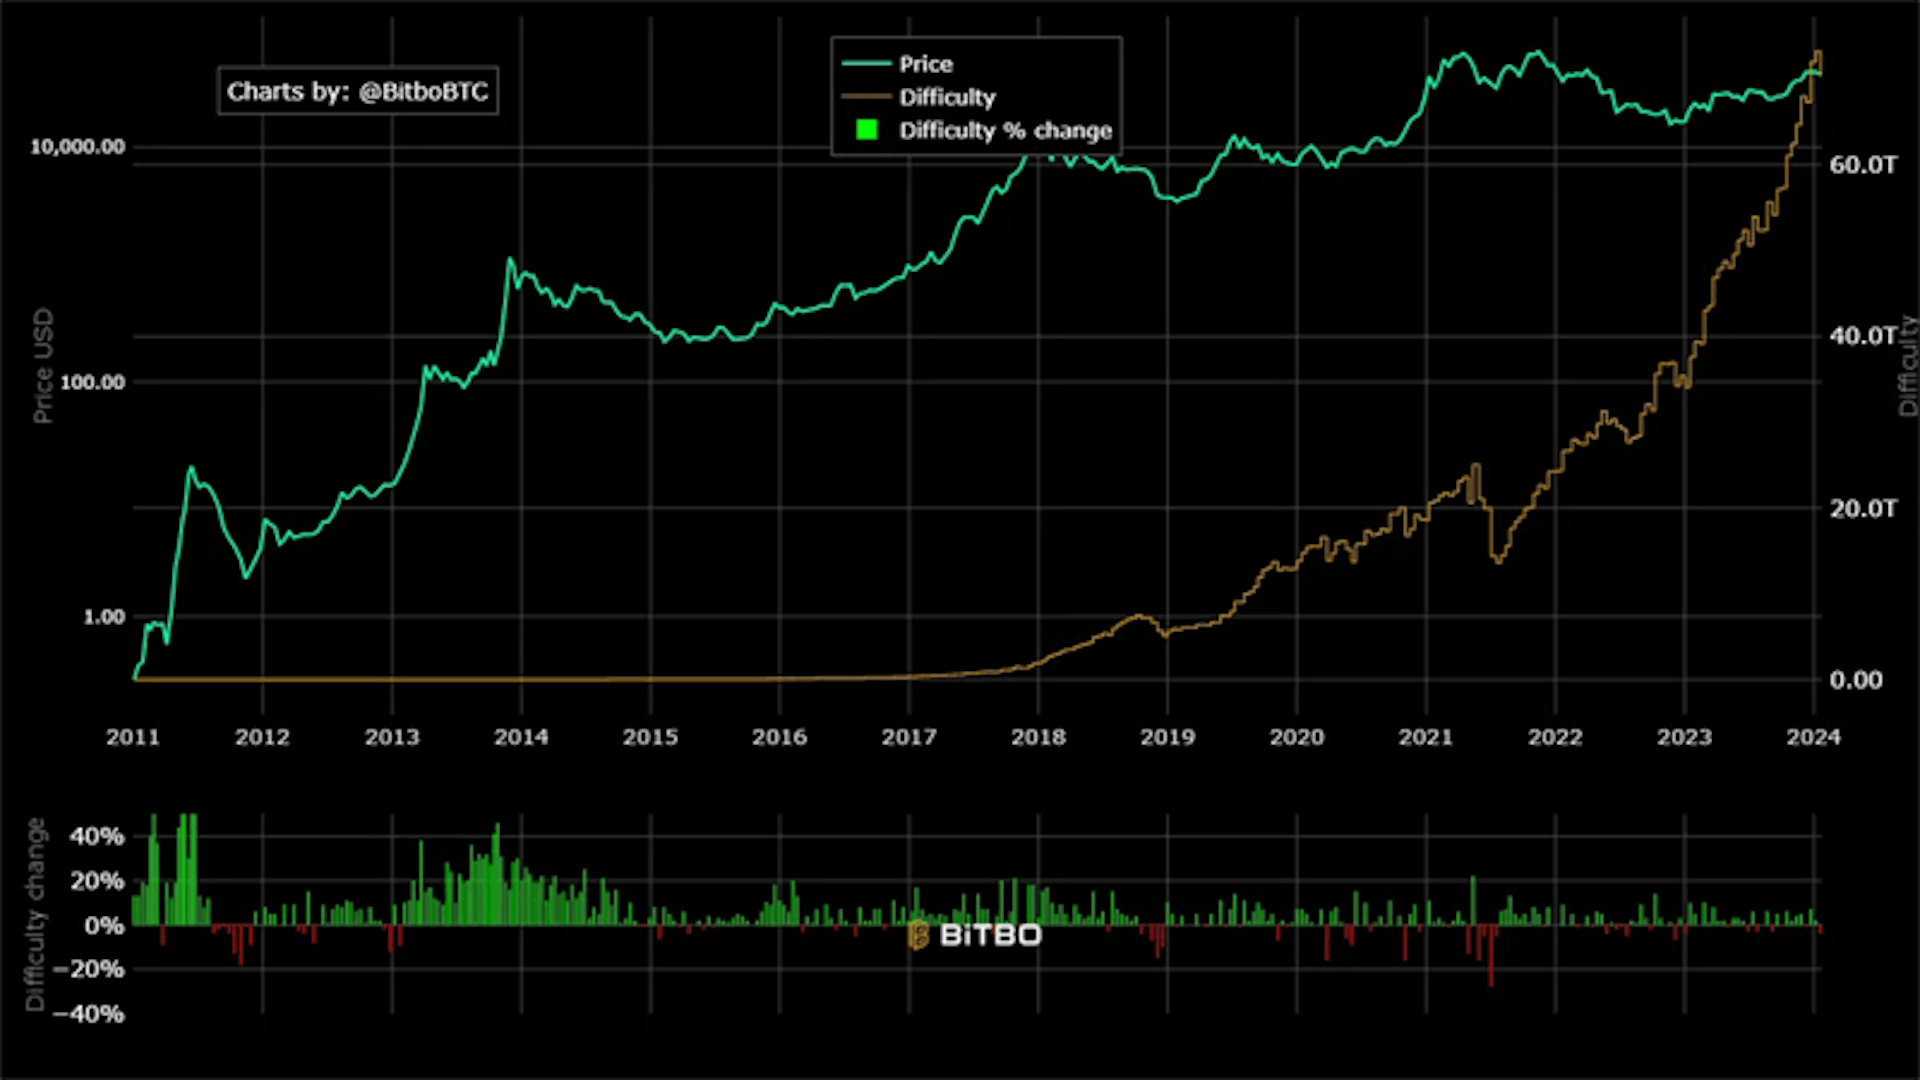 Madencilik Zorluk tablosu, Bitcoin'in zorluğundaki tarihsel değişiklikleri gösterir.